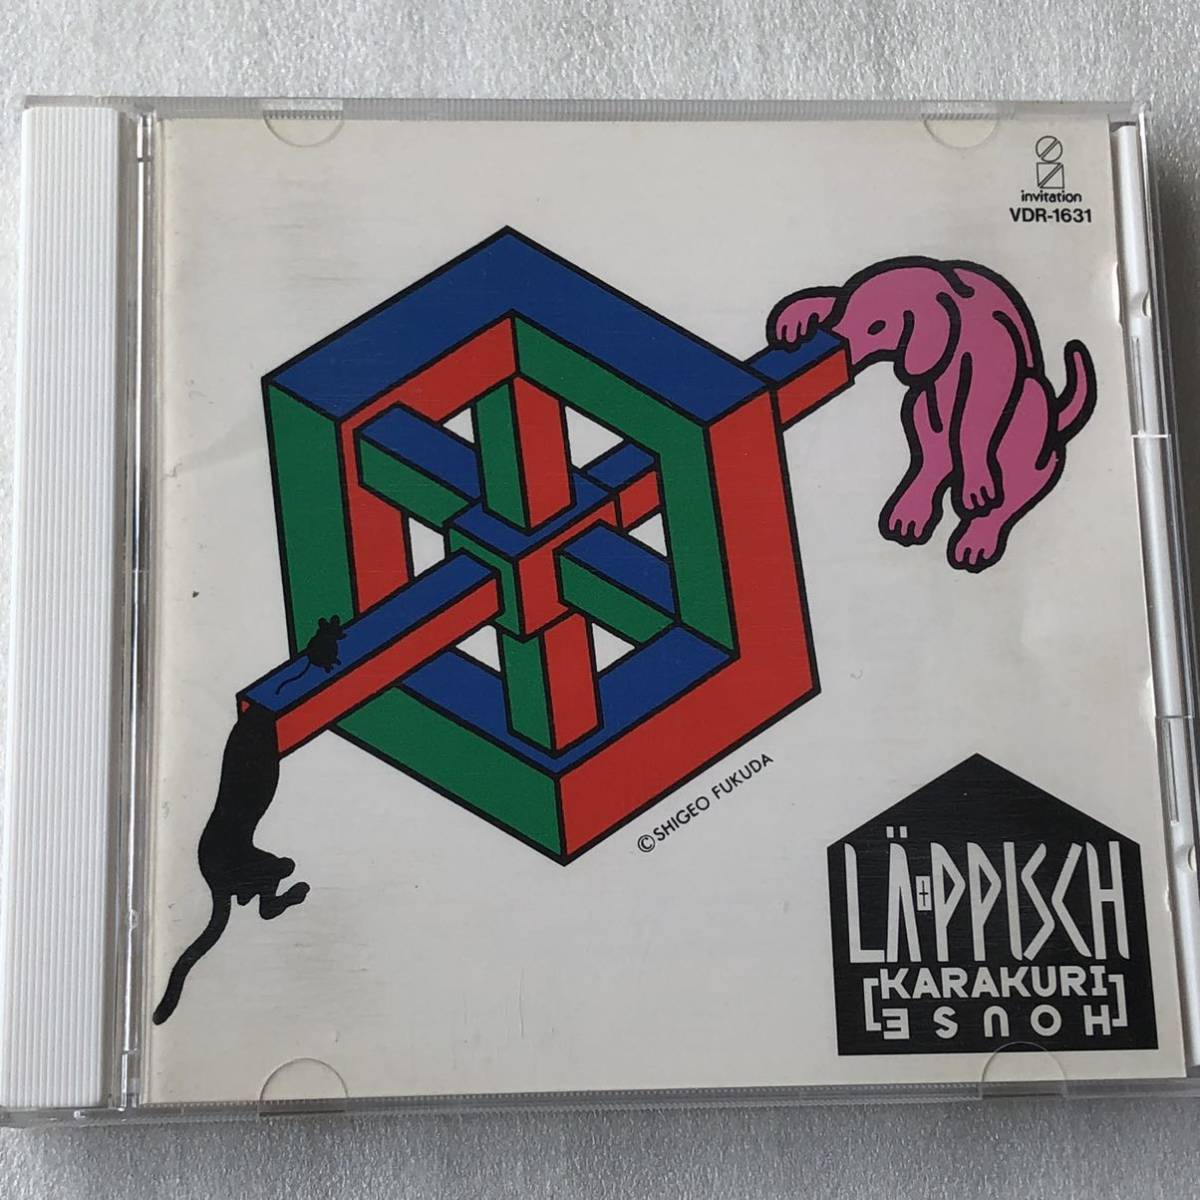 中古CD レピッシュ/KARAKURI HOUSE (1989年)_画像1